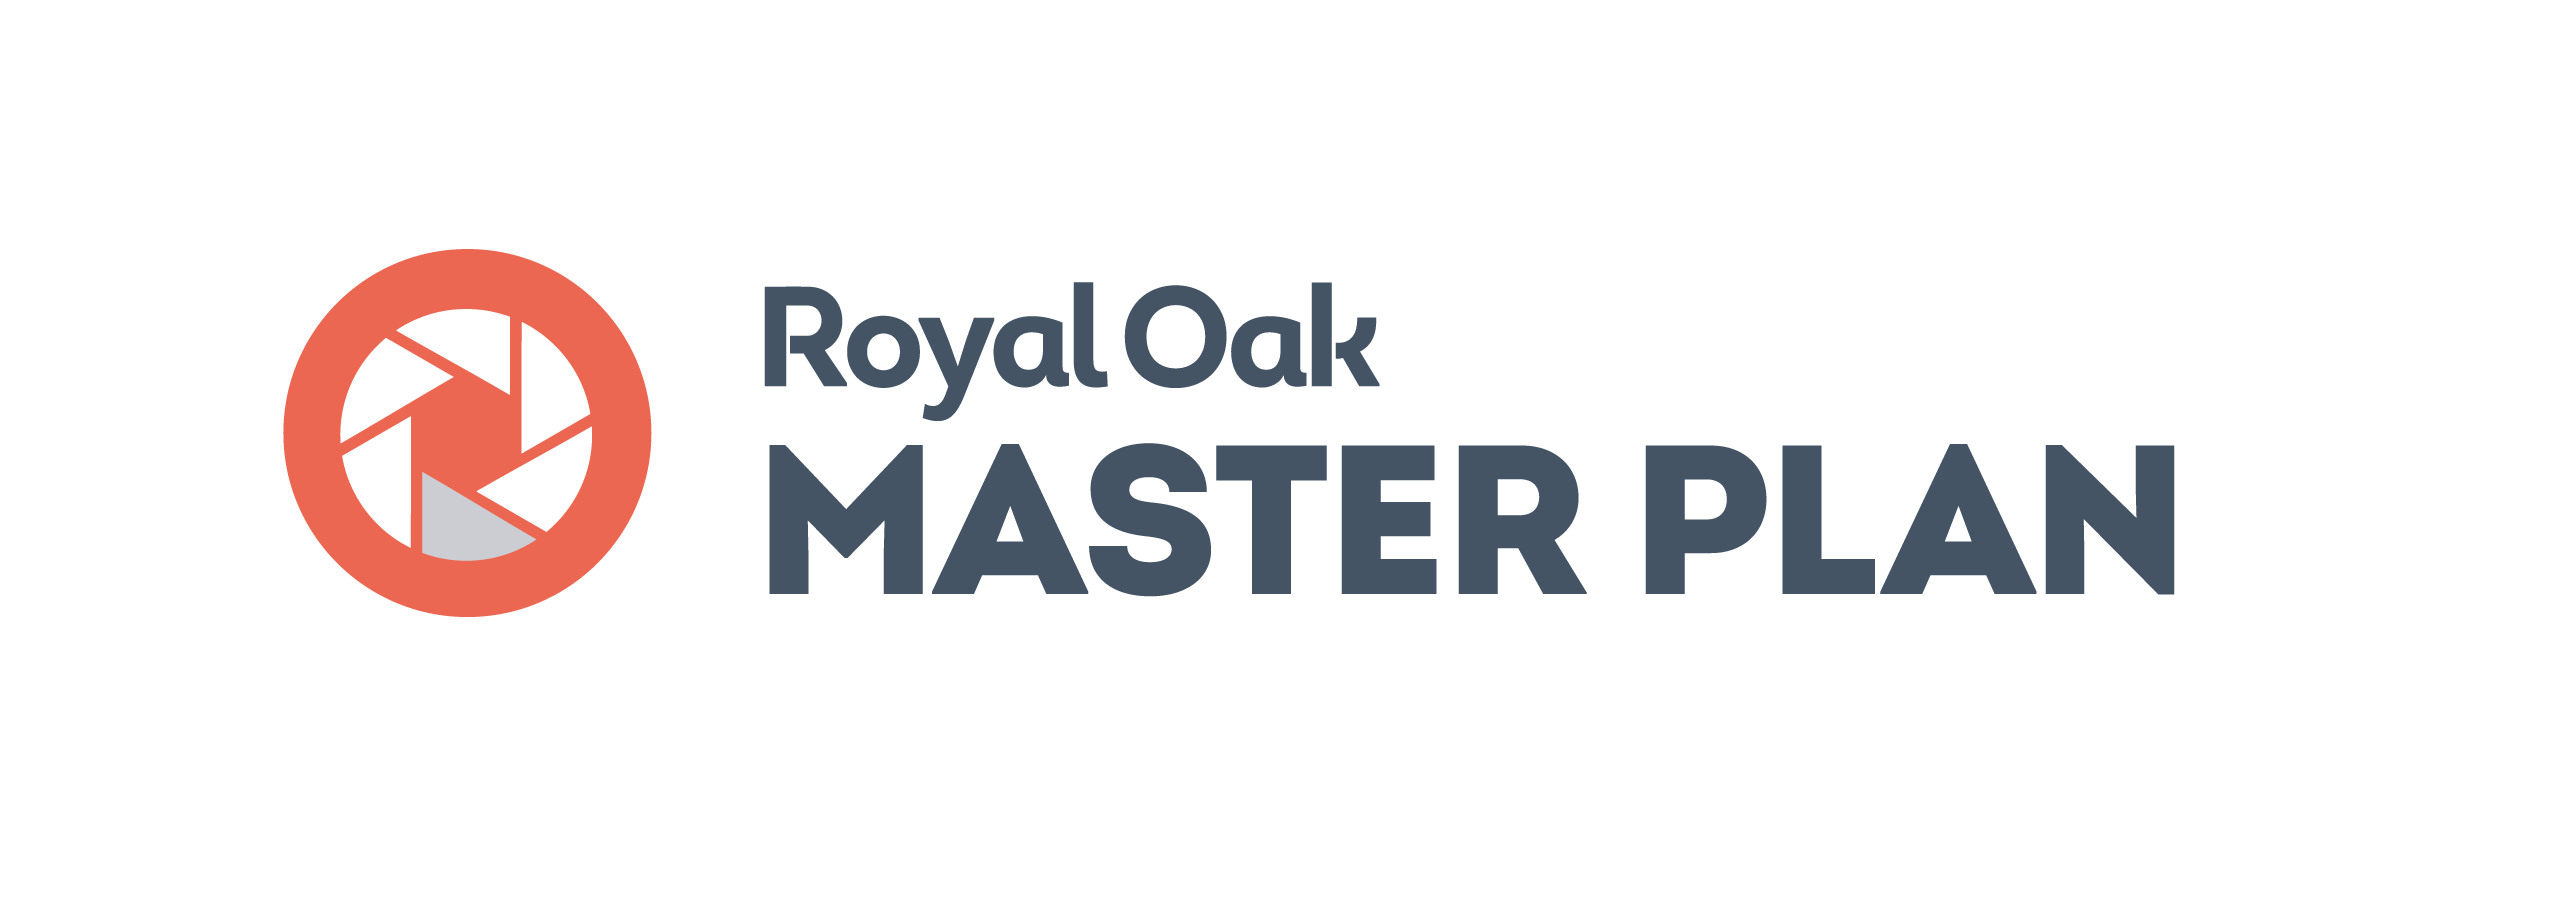 Plan Royal Oak